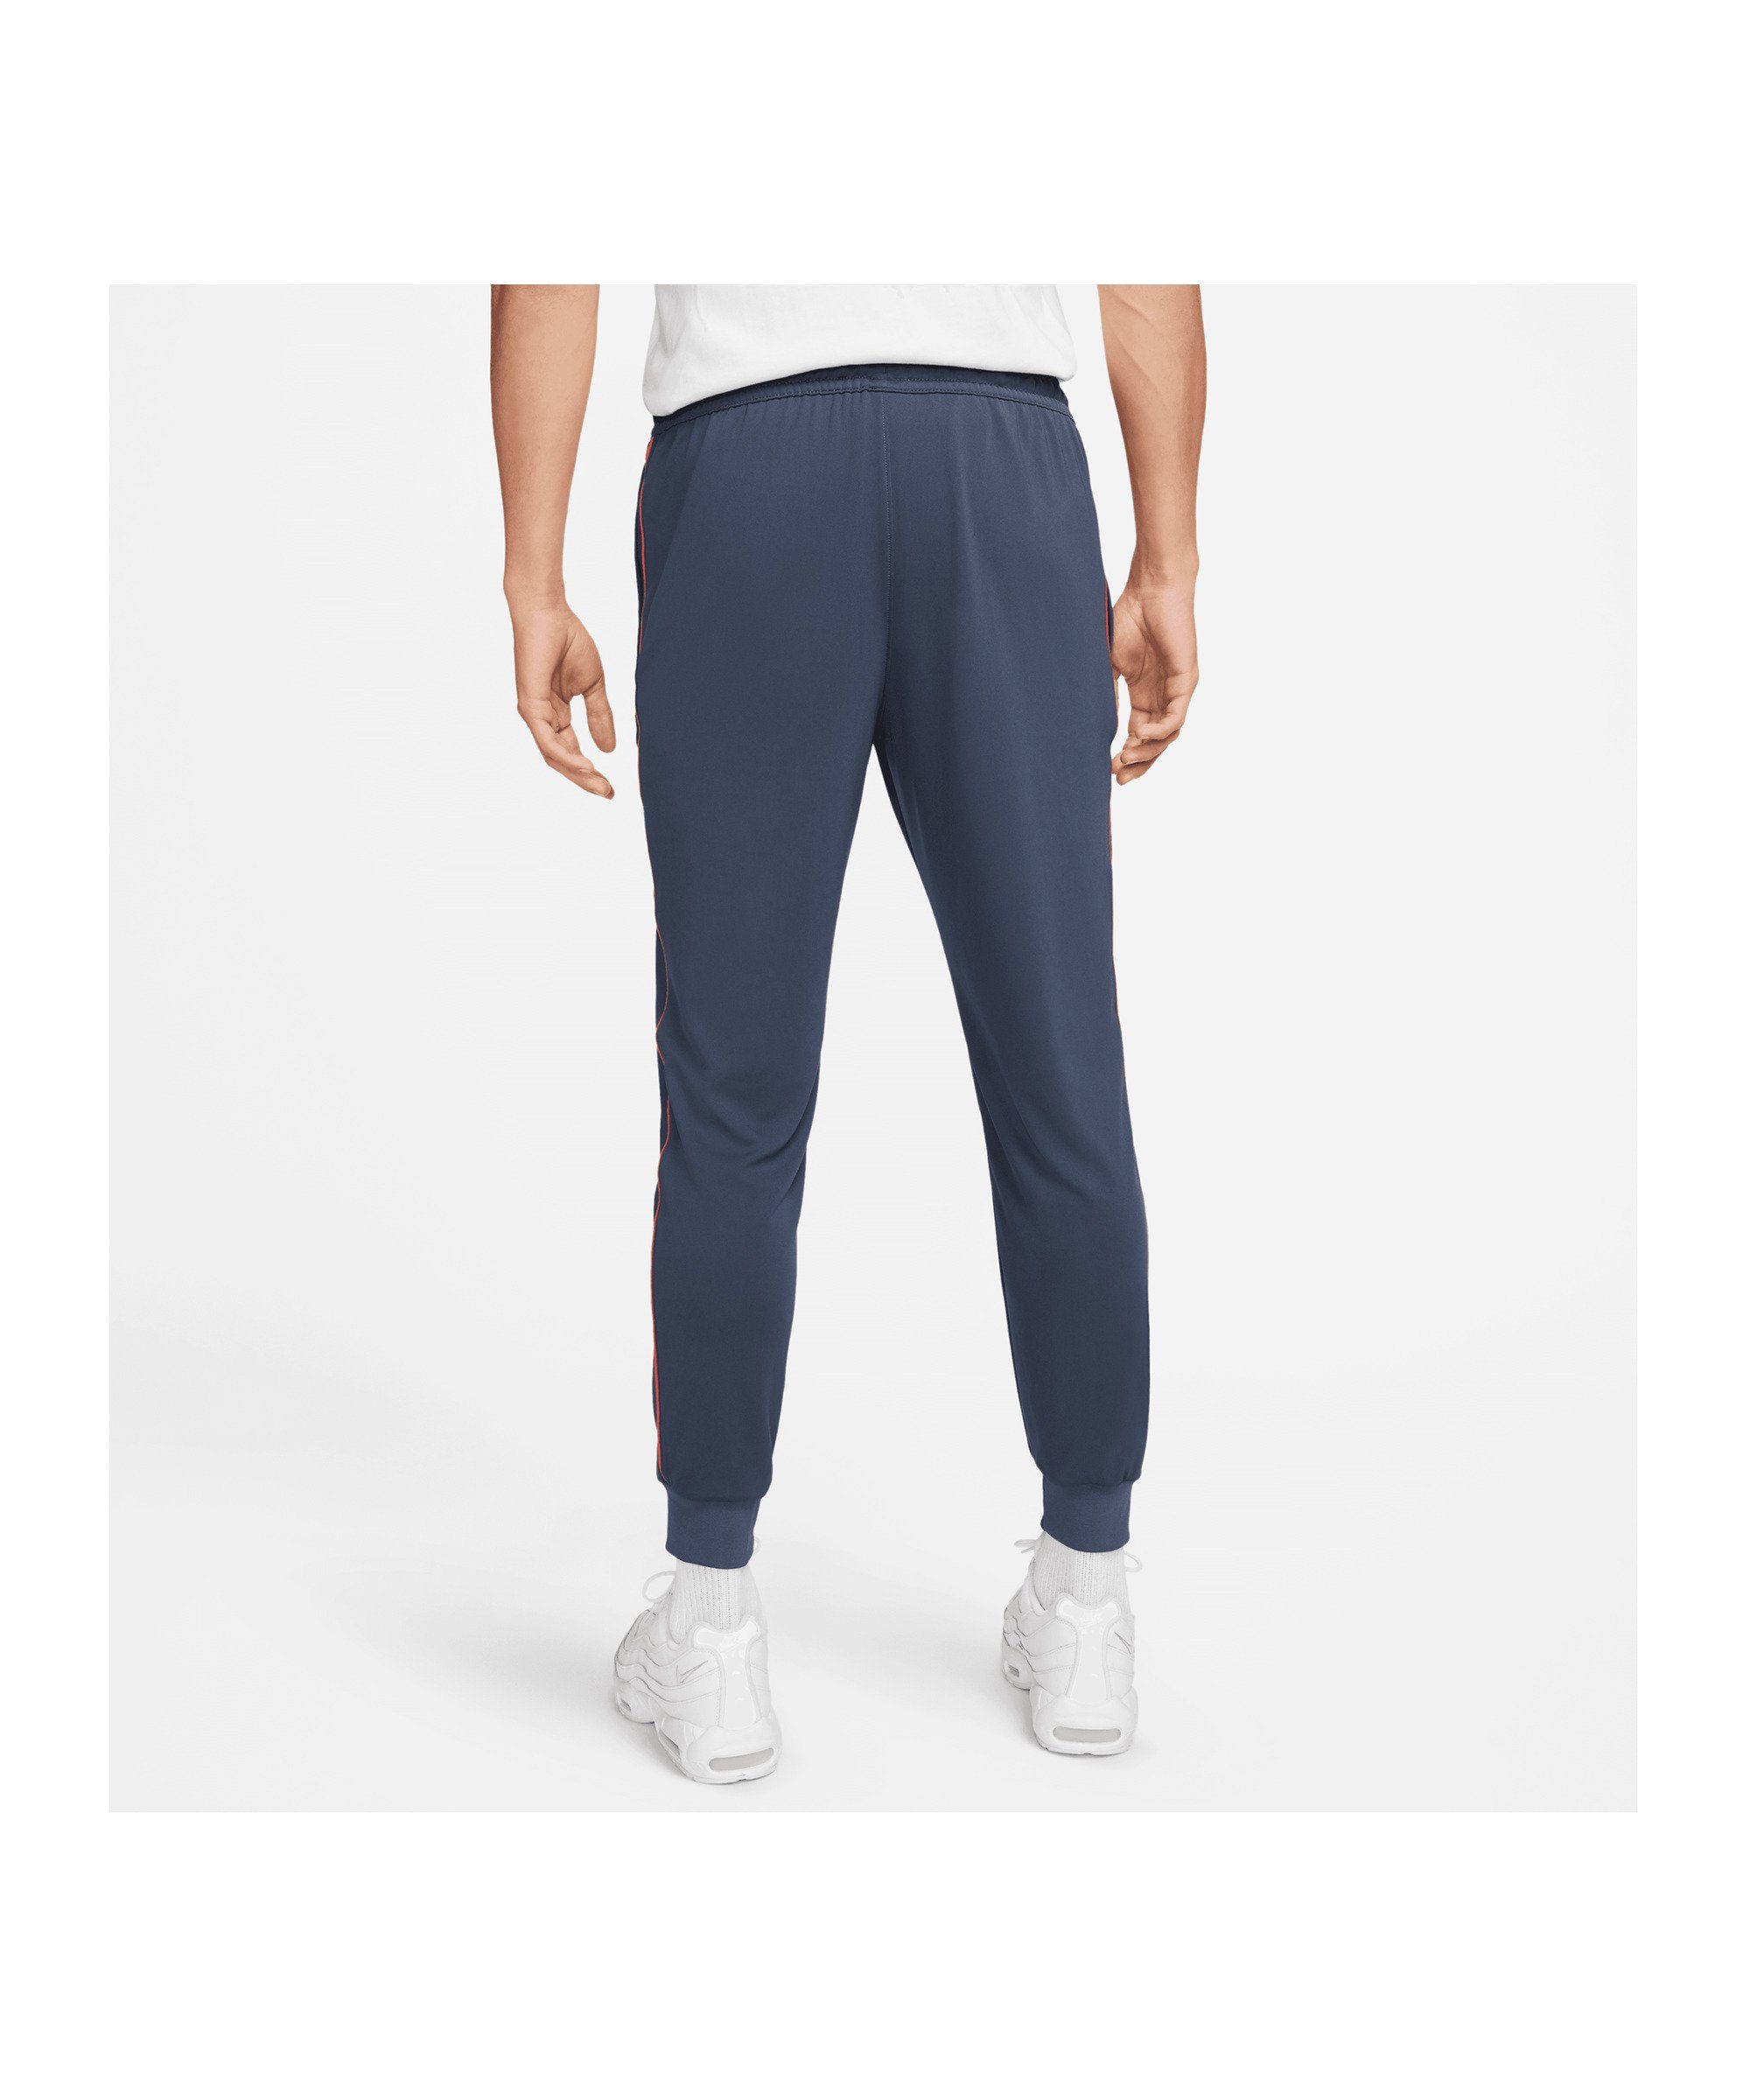 Sportswear Hose Nike blaurotweiss F.C. Jogginghose Soccer Libero